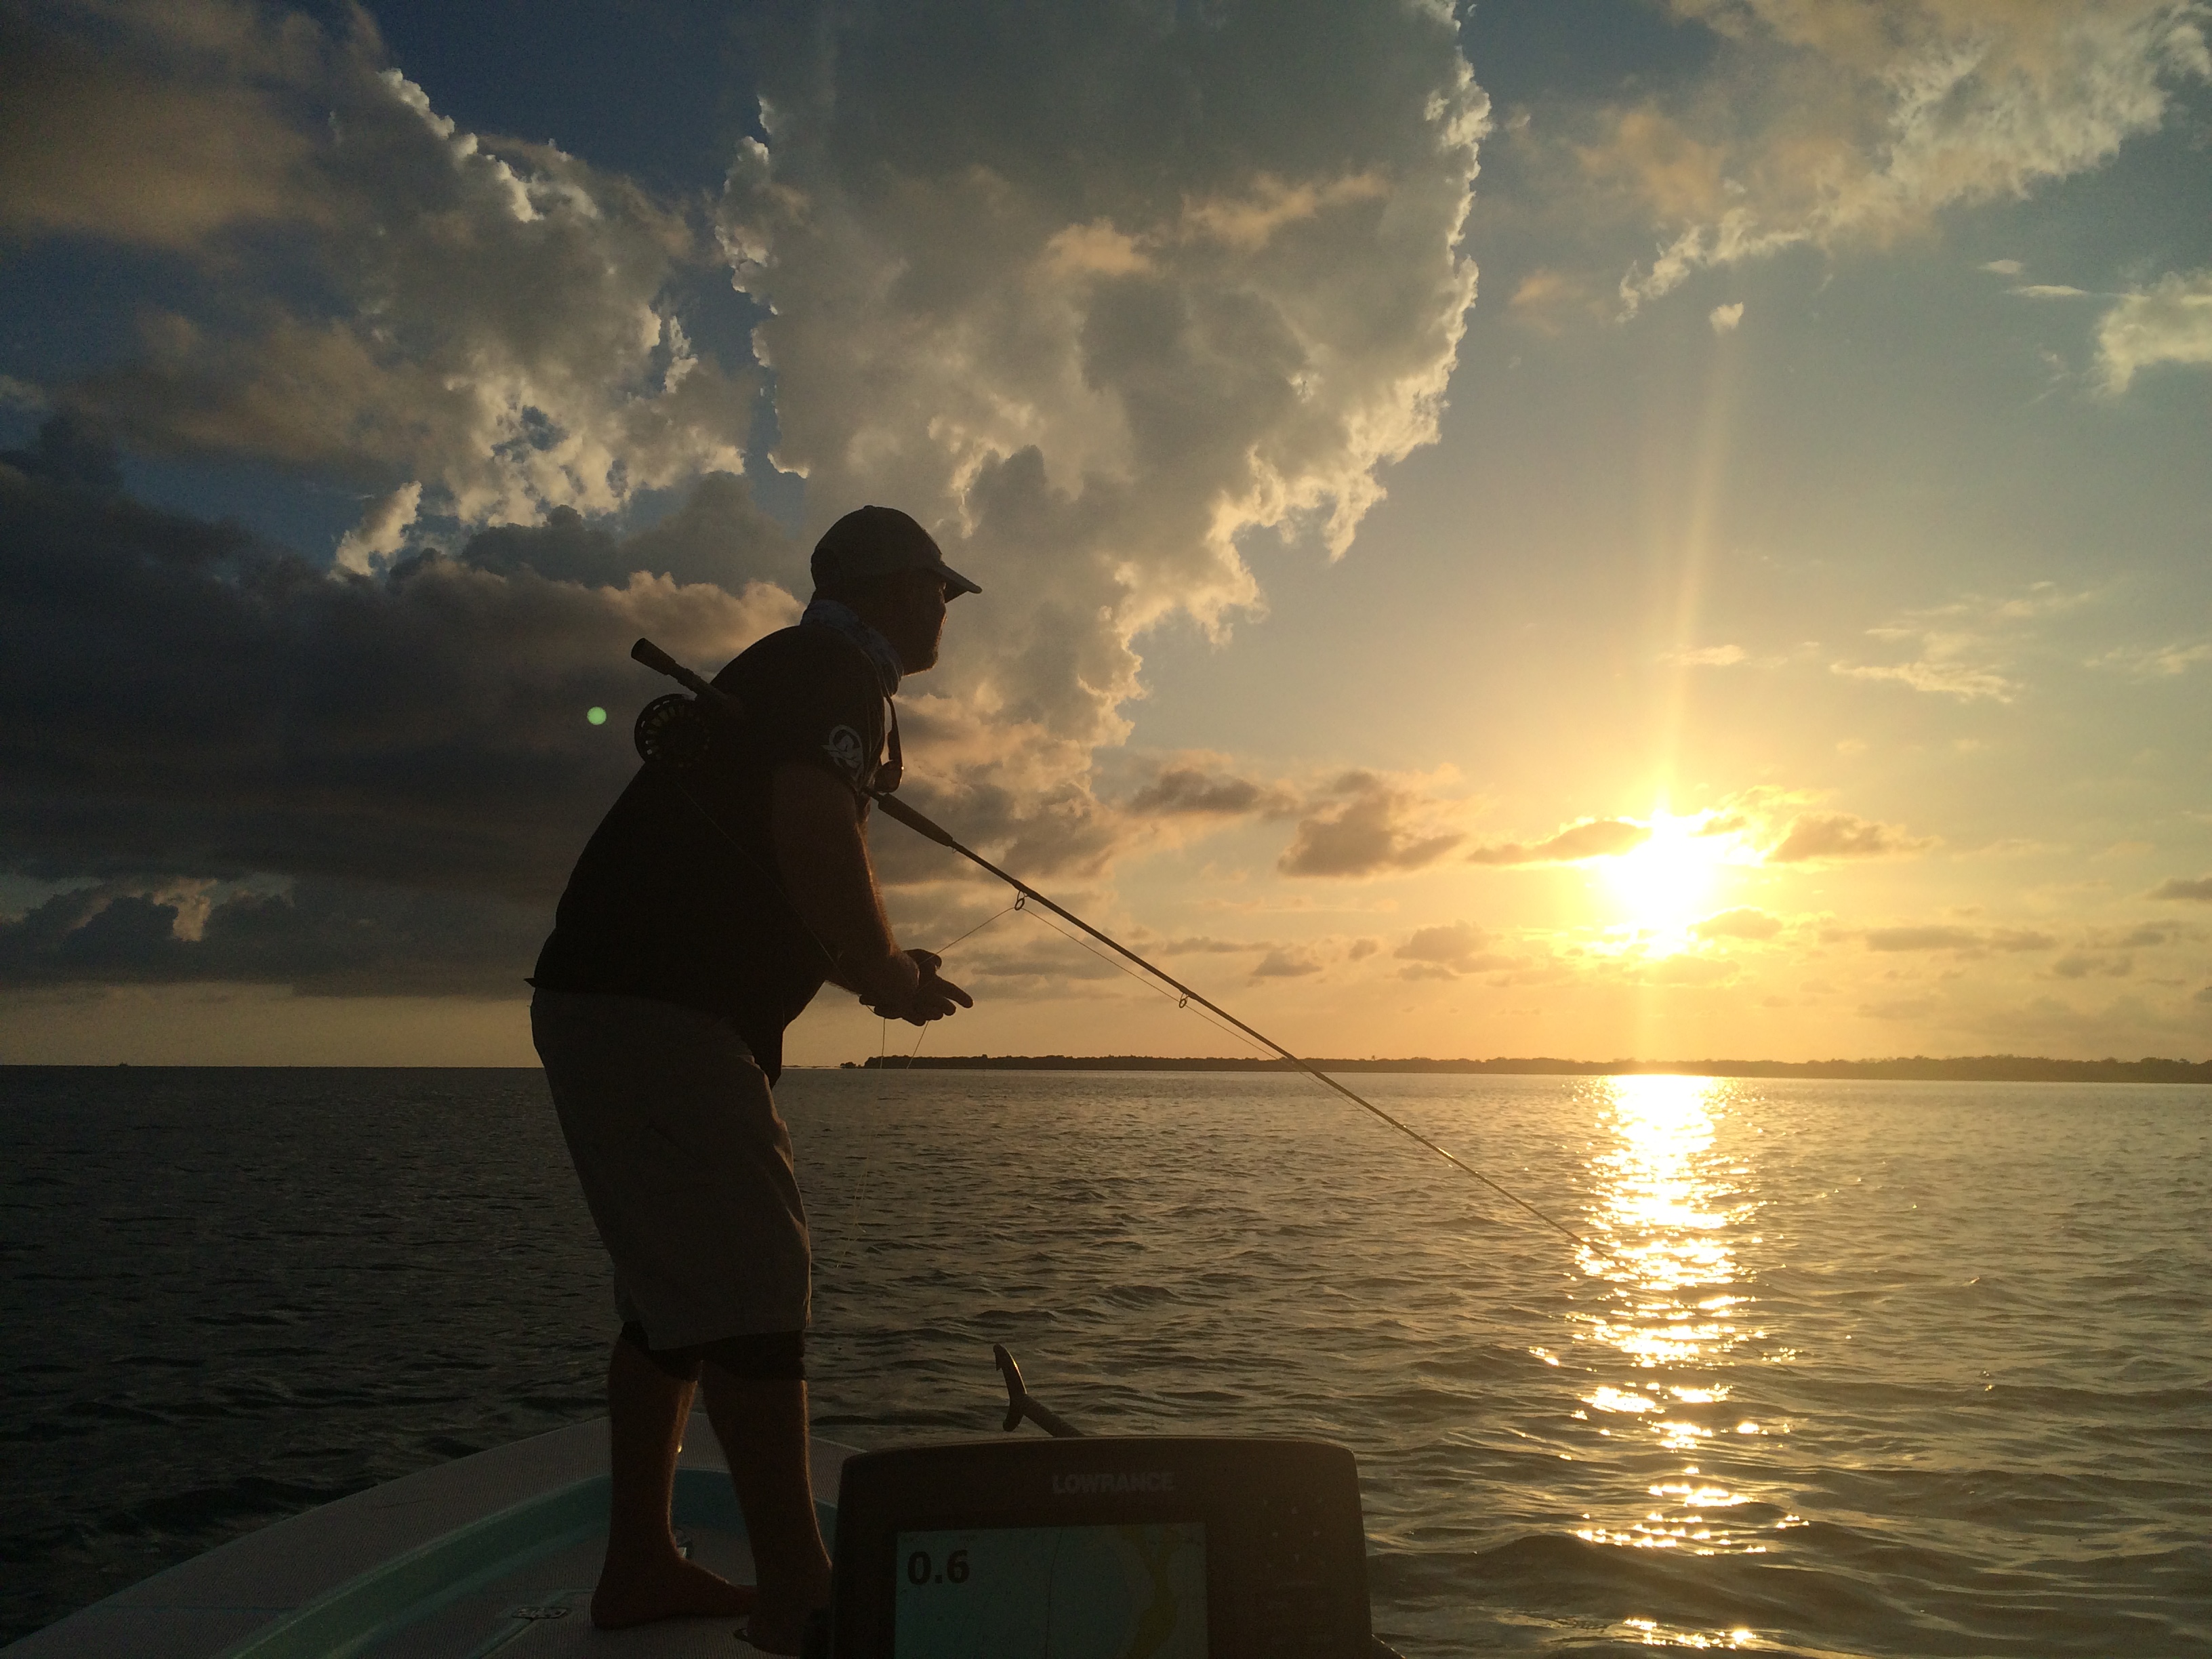 Florida Keys Fishing Report